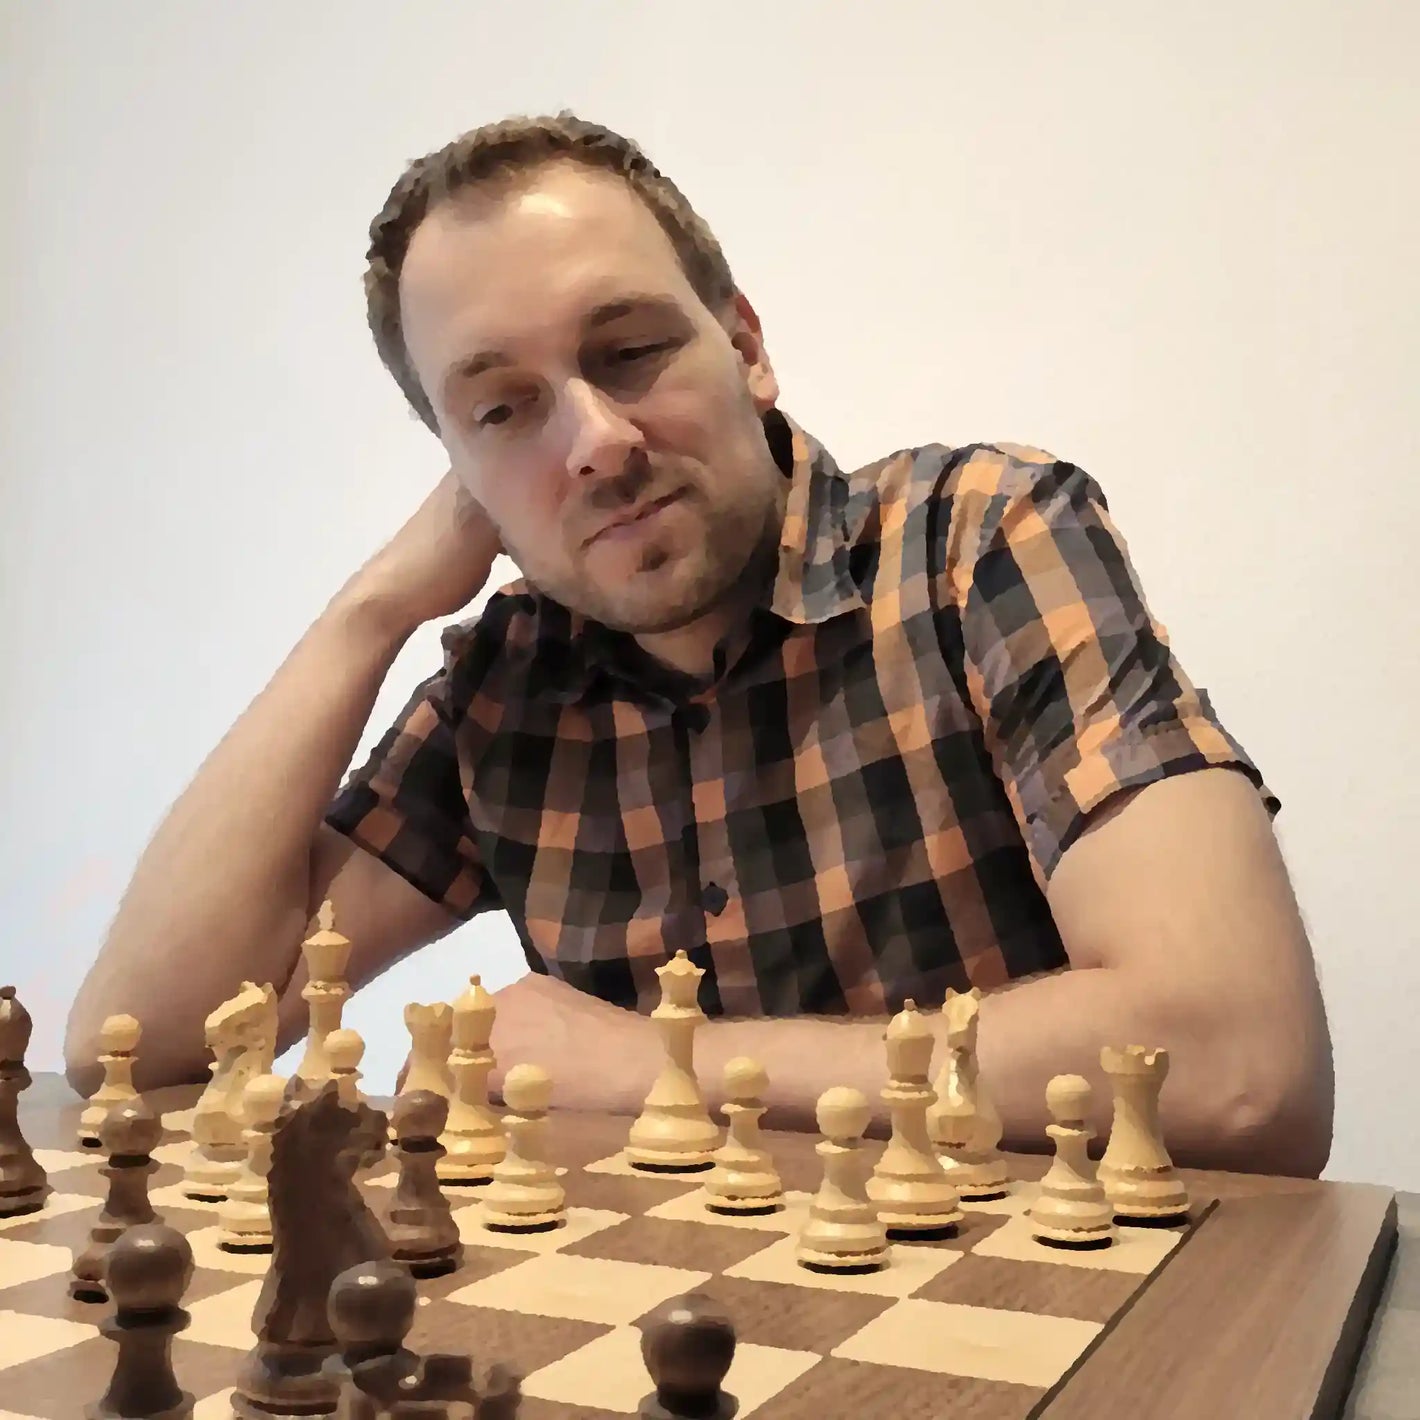 Stefan Fastenau from Chess Chivalry